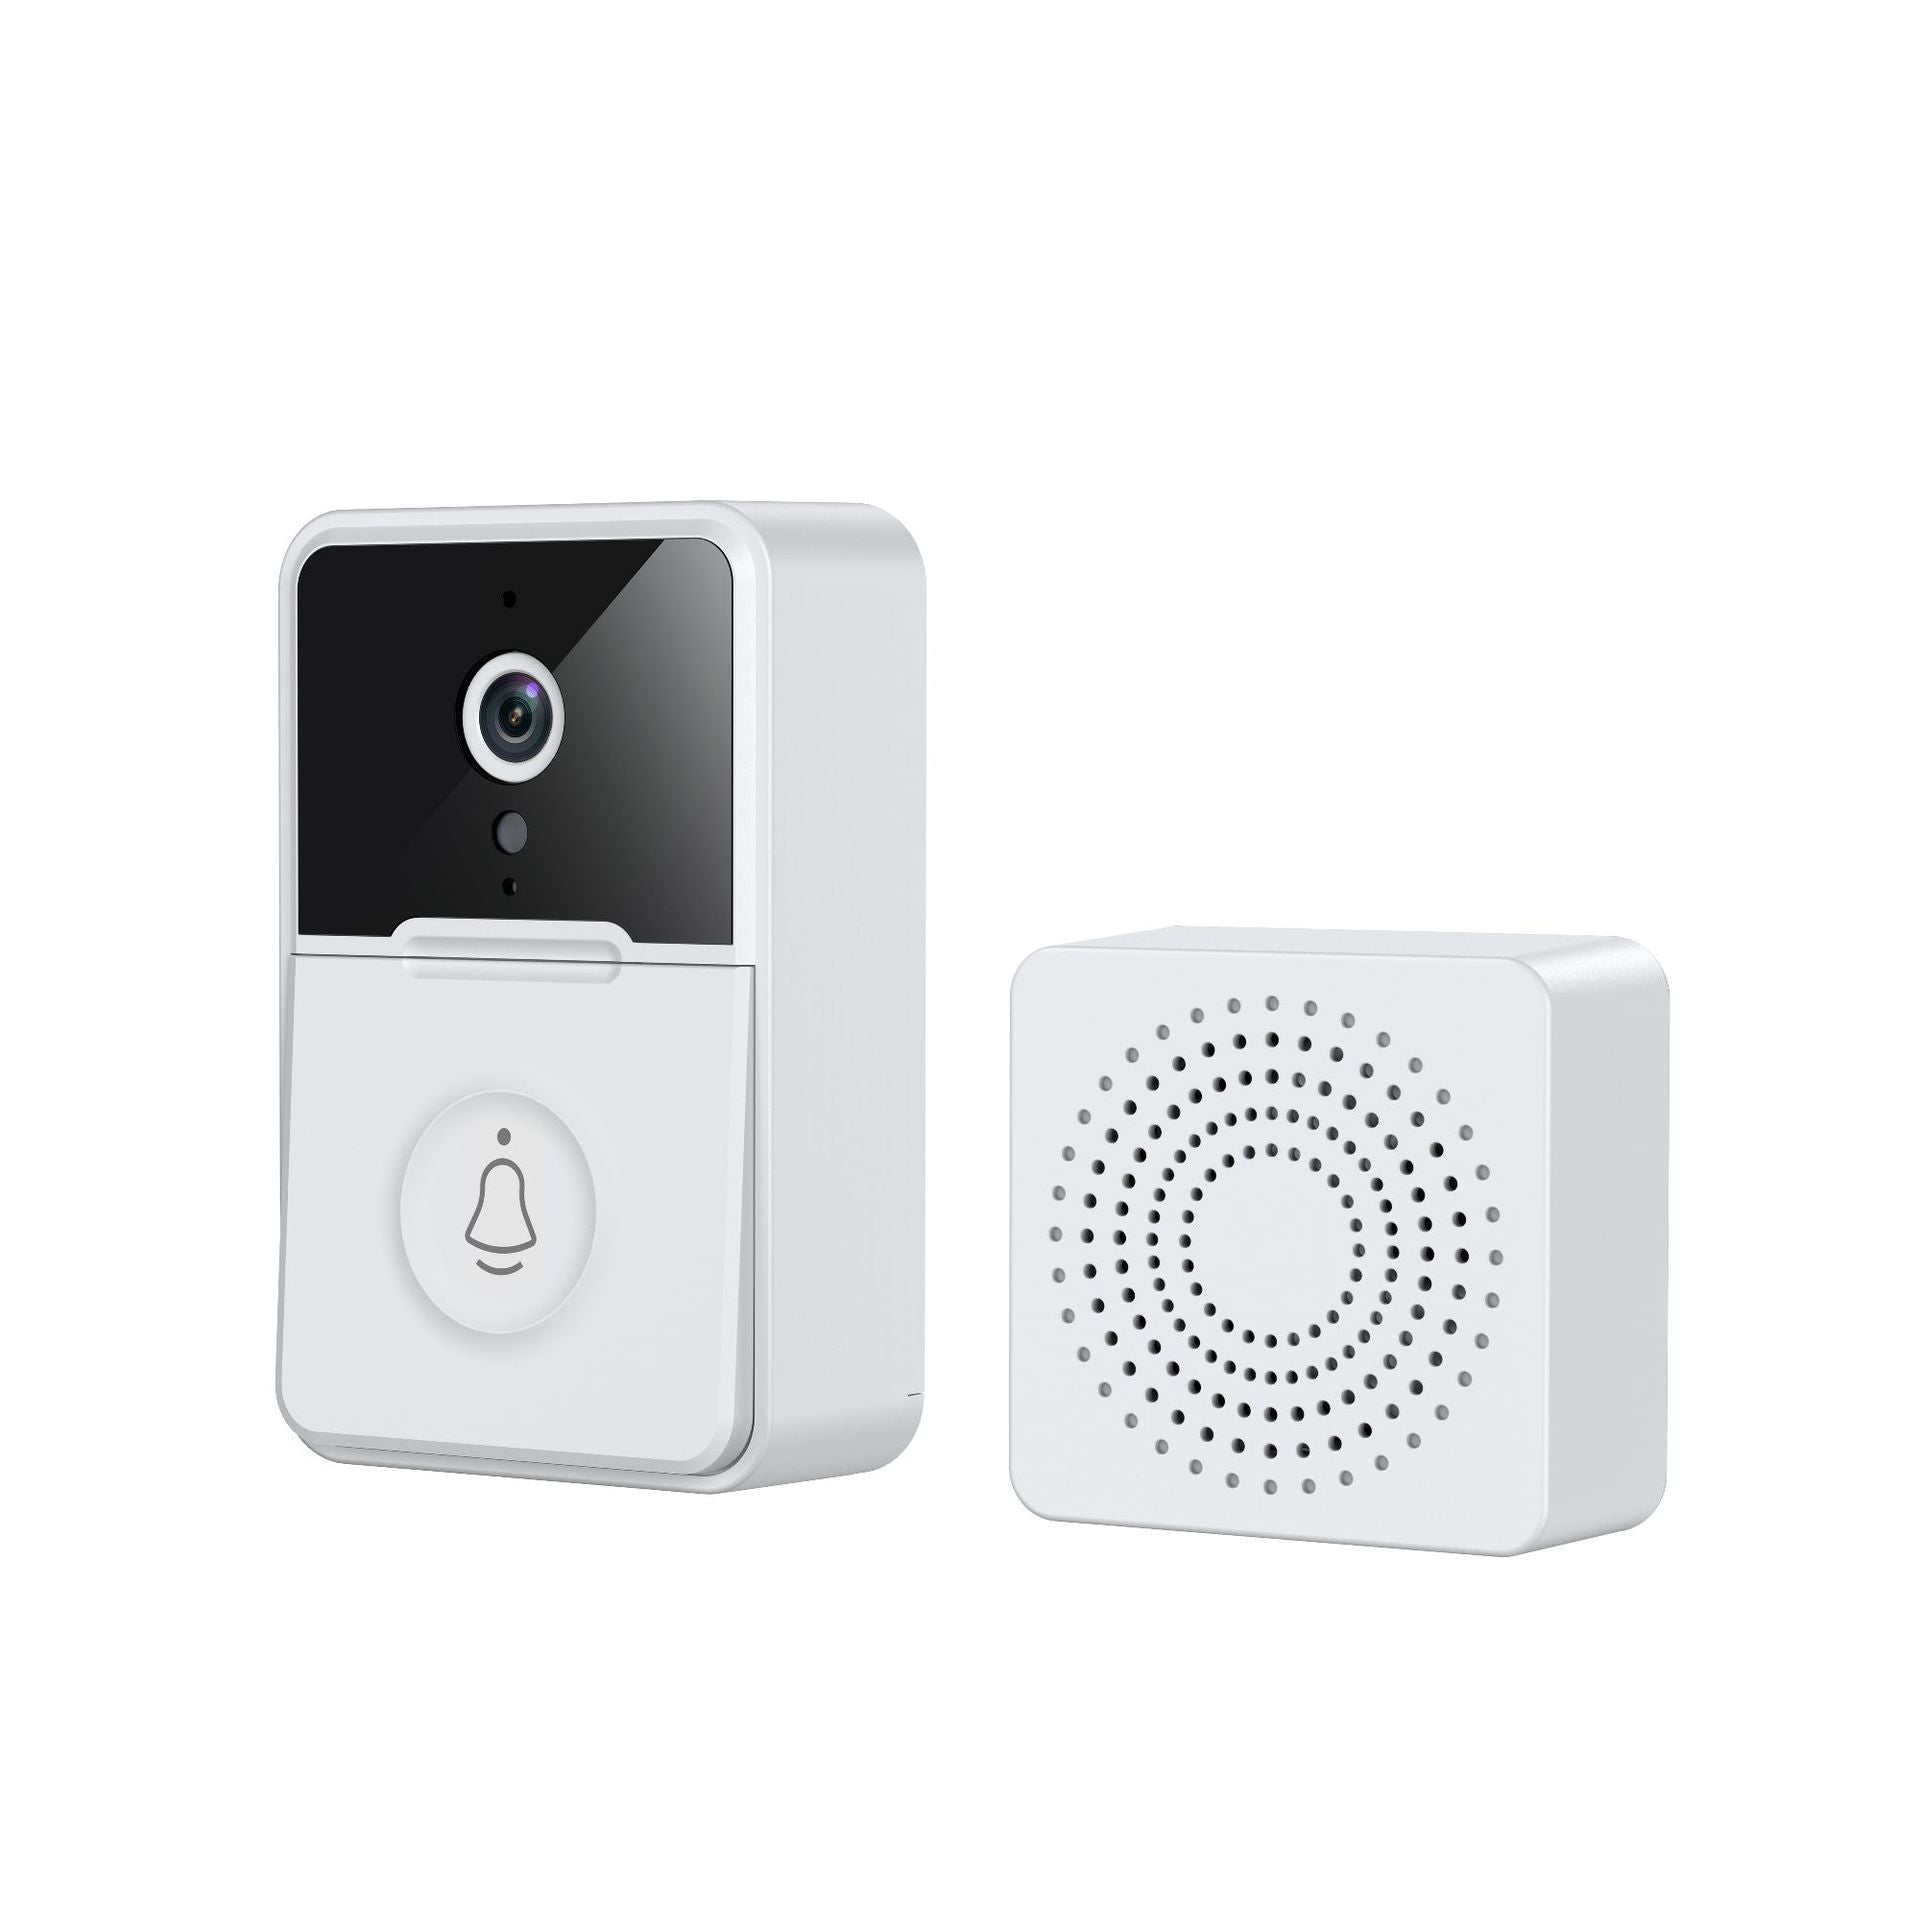 Nuevo Monitoreo remoto HD visión nocturna sonido cambiante puerta timbre-New Remote Monitoring HD Night Vision Sound Changing Door Smart Doorbell